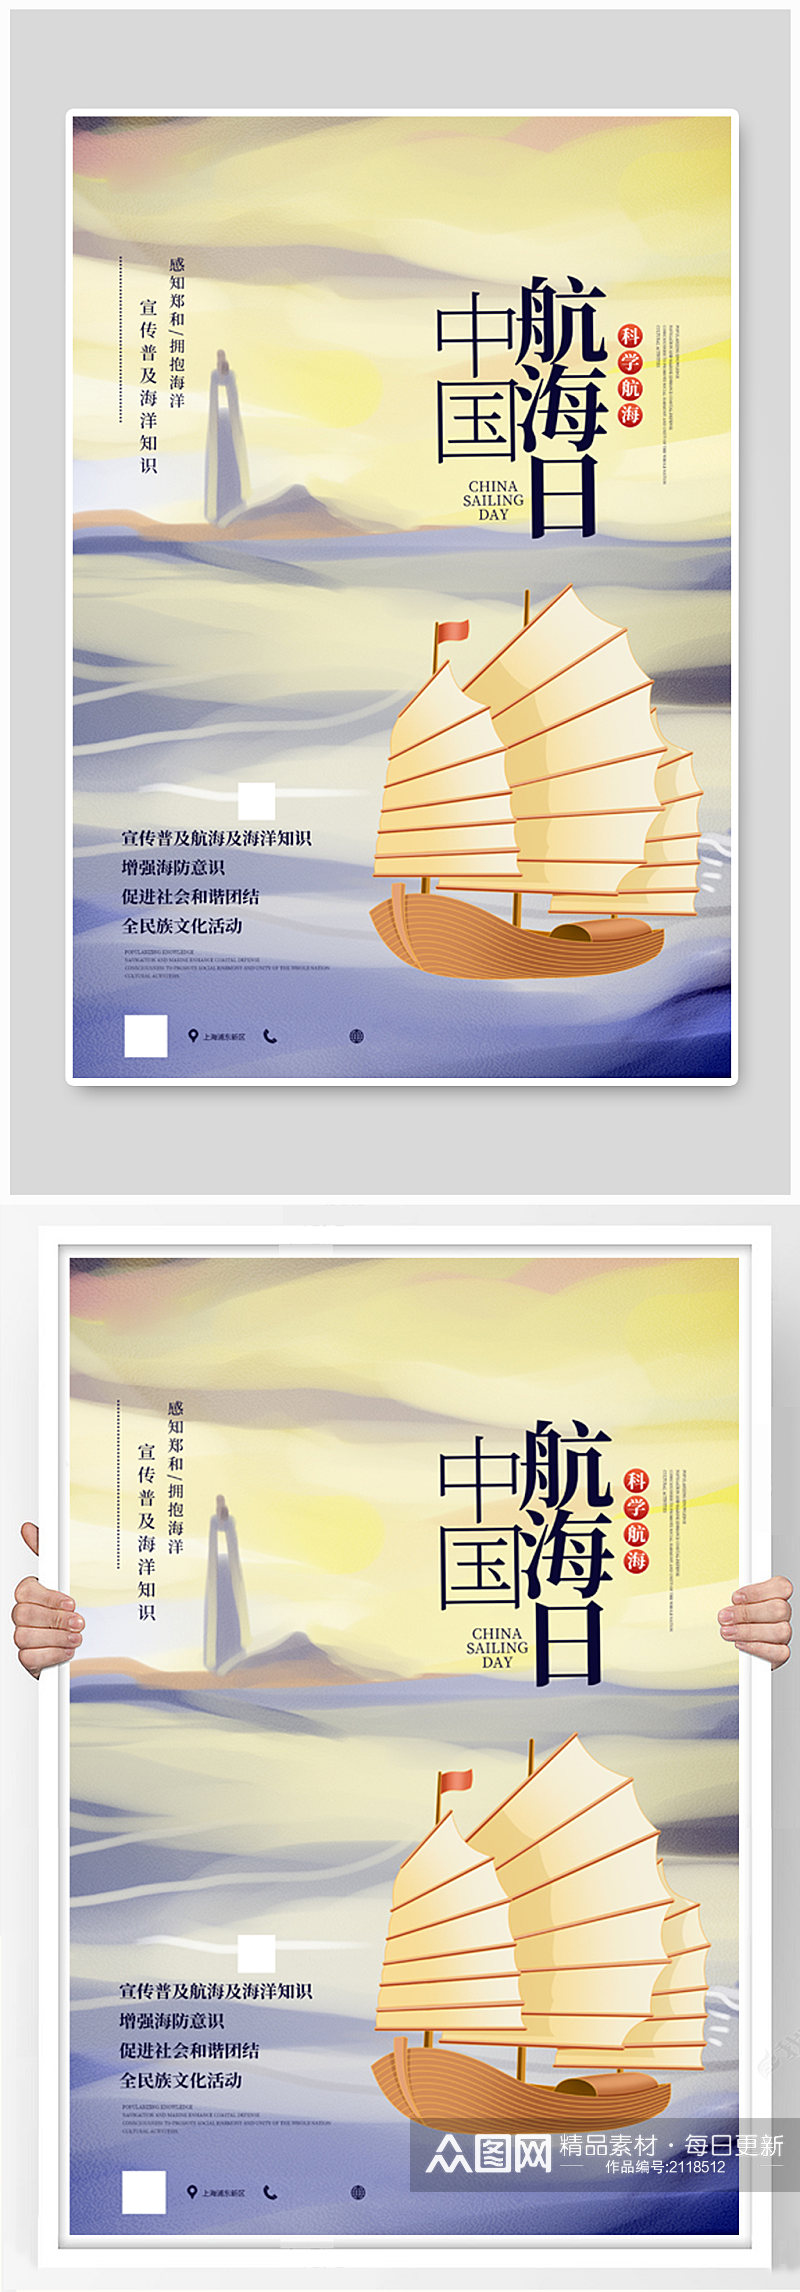 水彩风中国航海日宣传海报素材